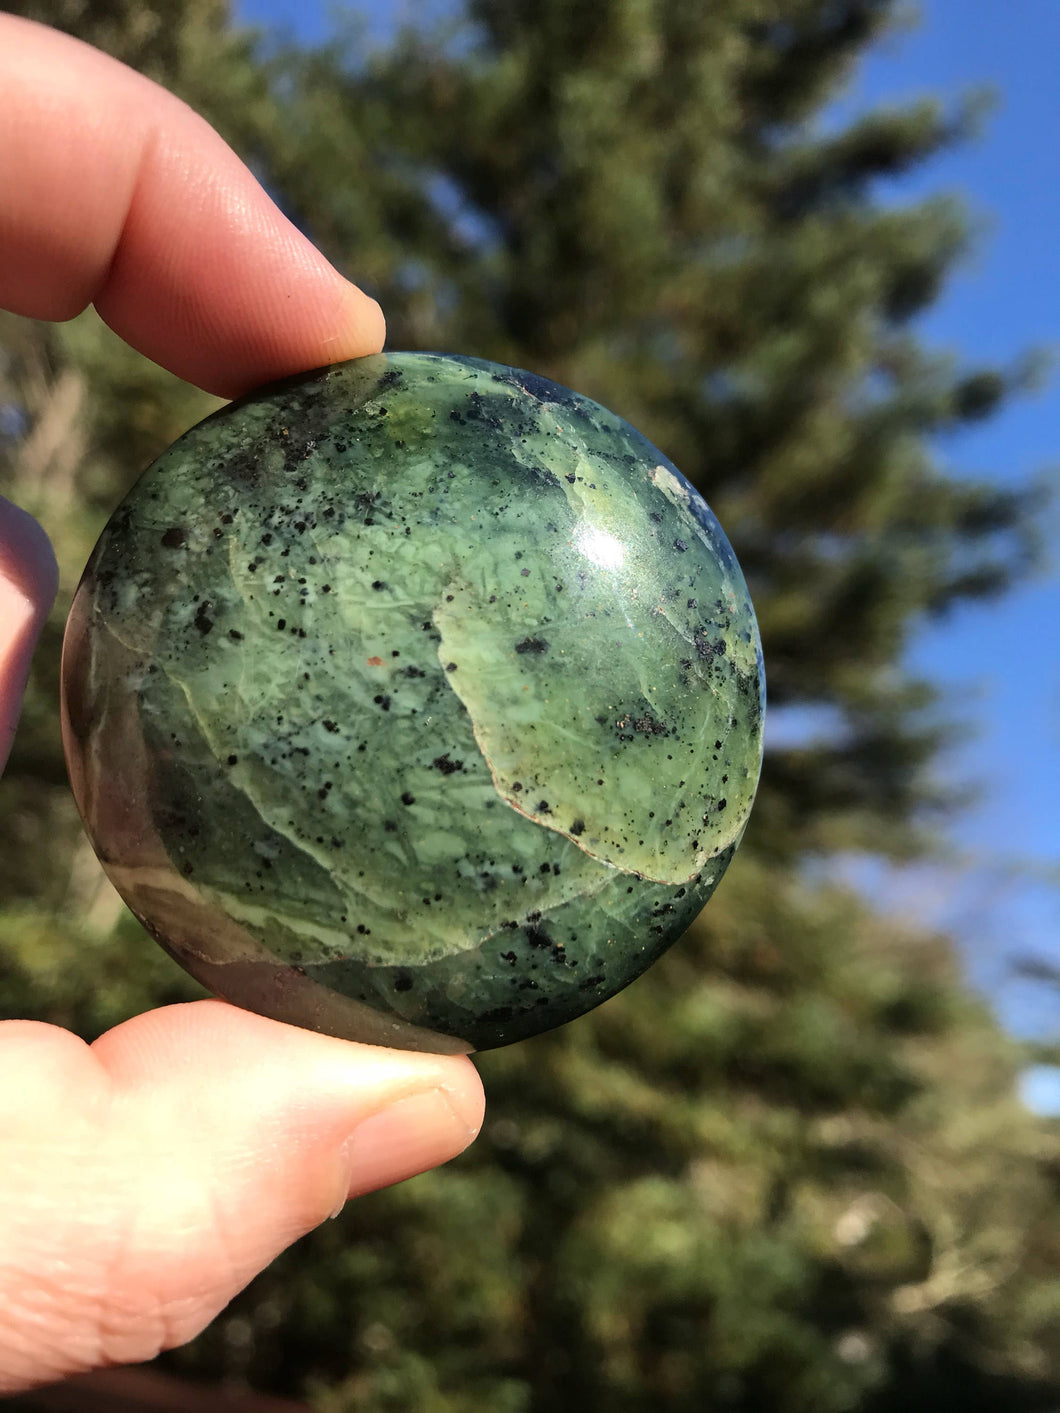 Himalayan Green Jade Disc Crystal